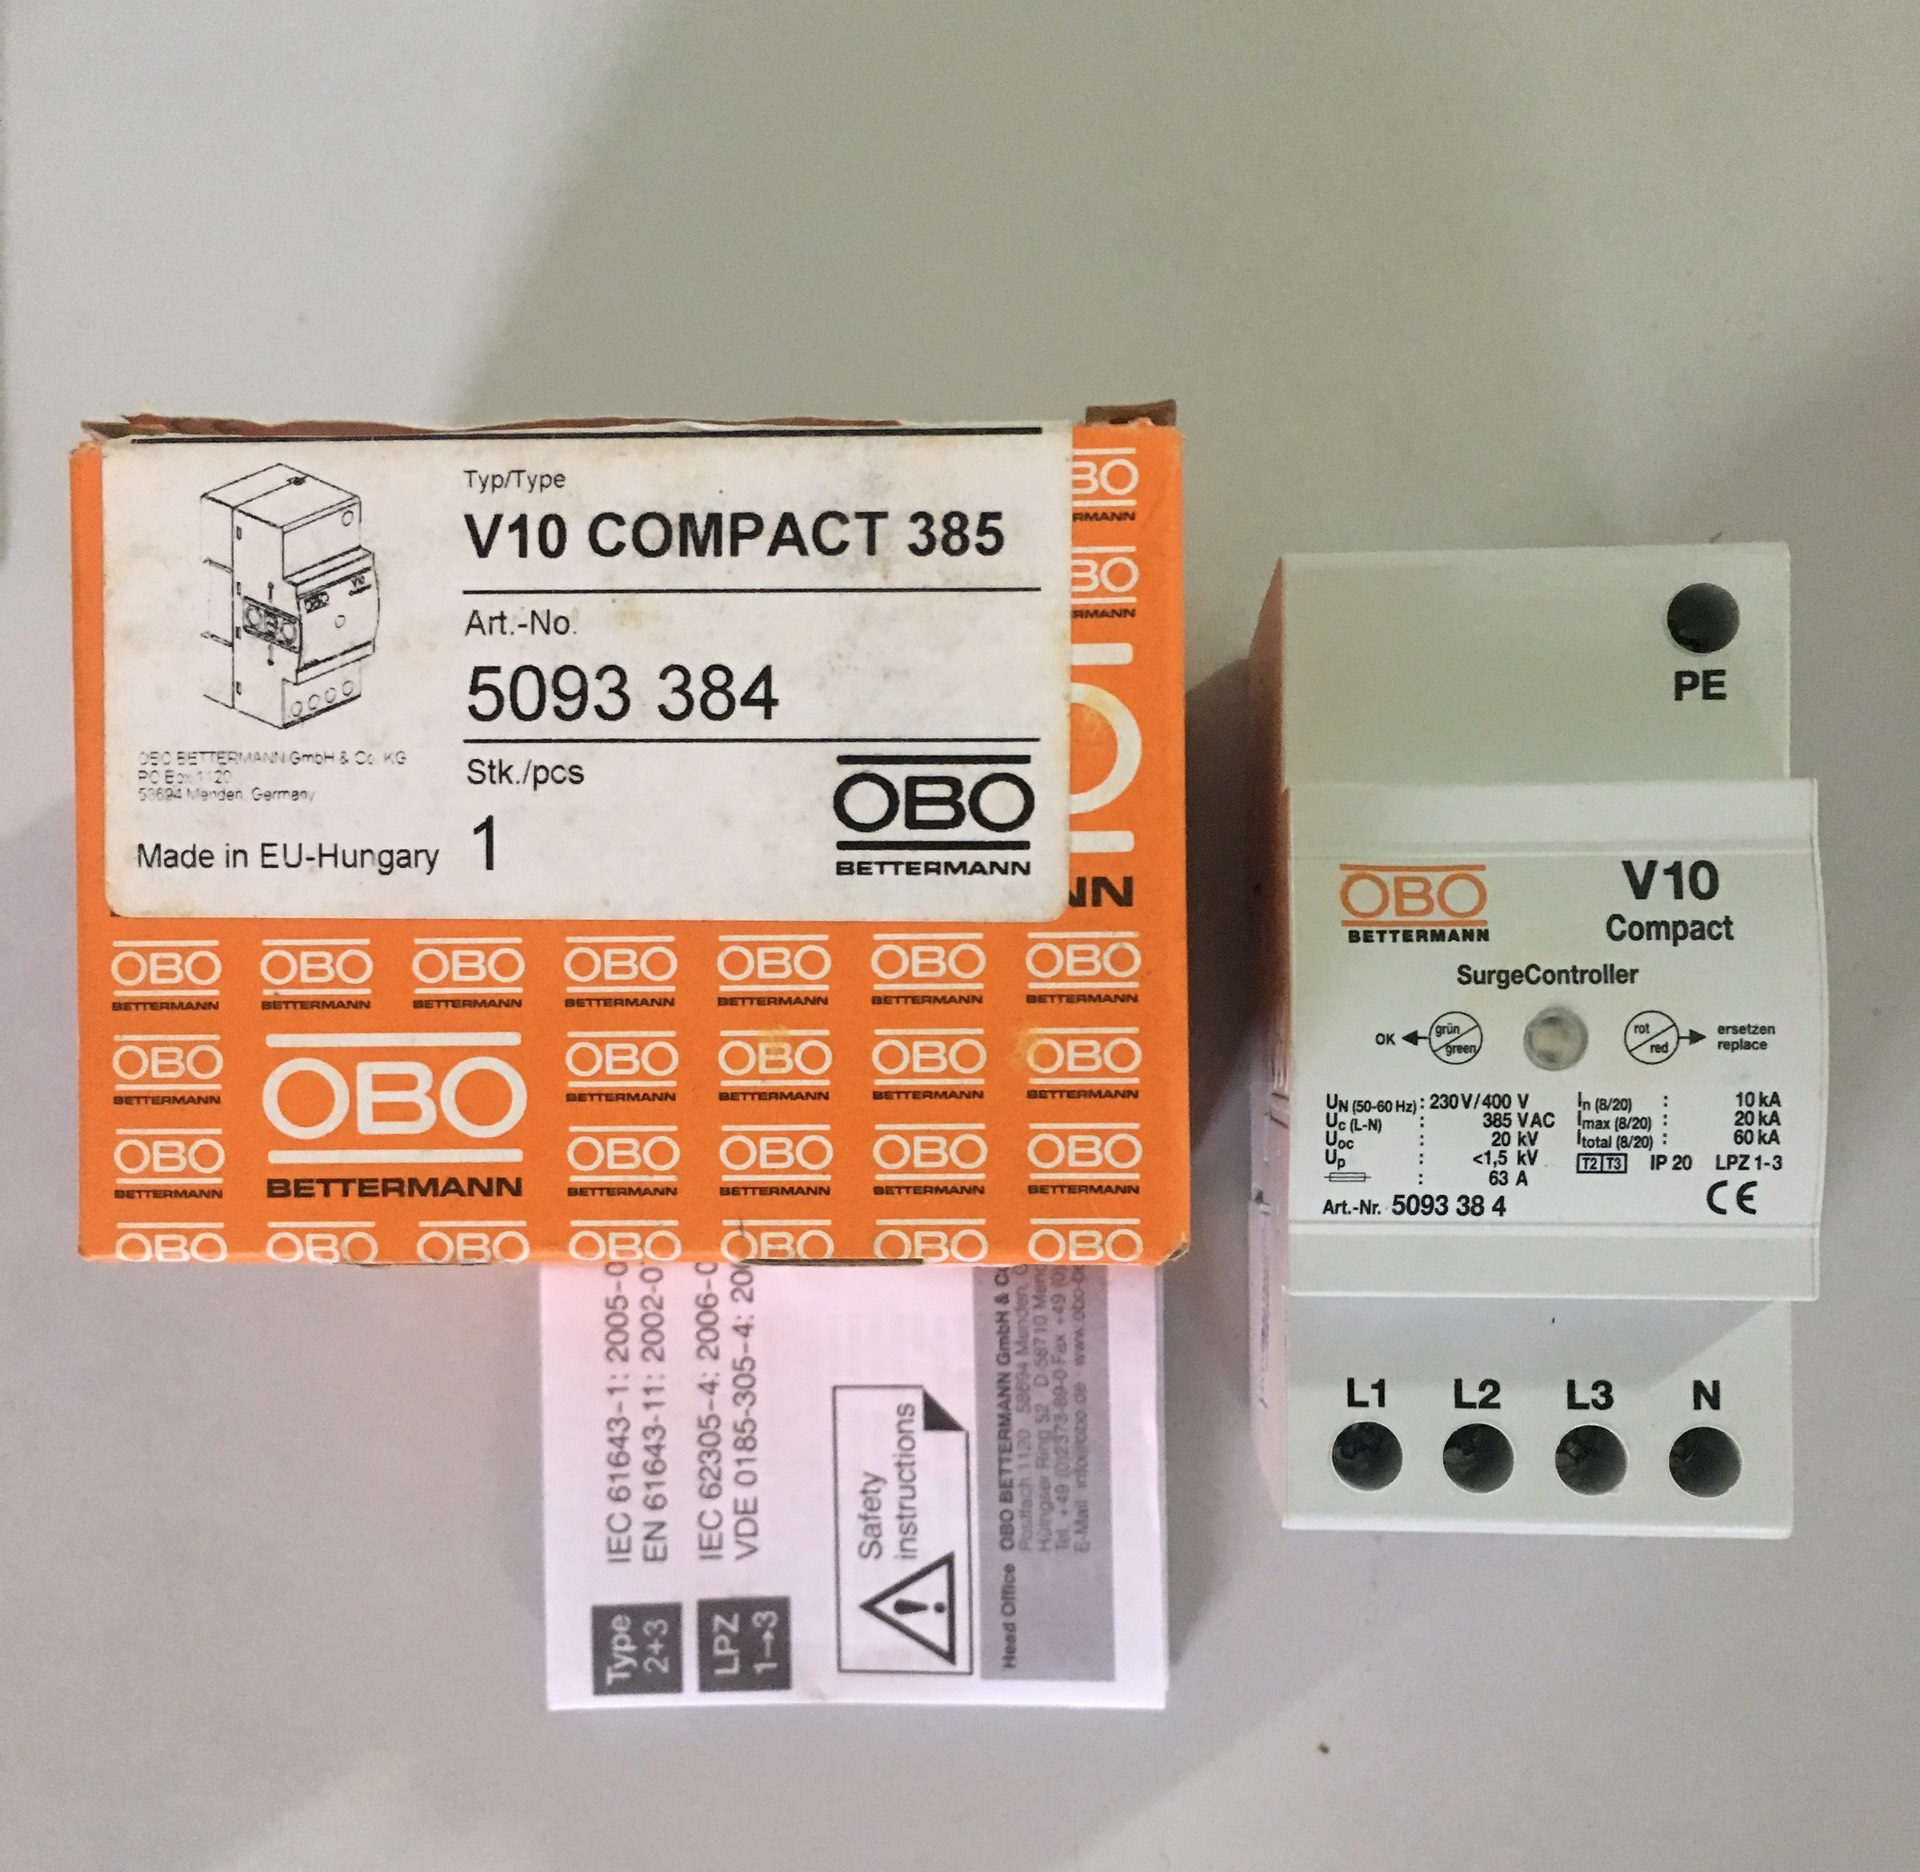 thiết bị chống sét lan truyền obo v10-compact-385